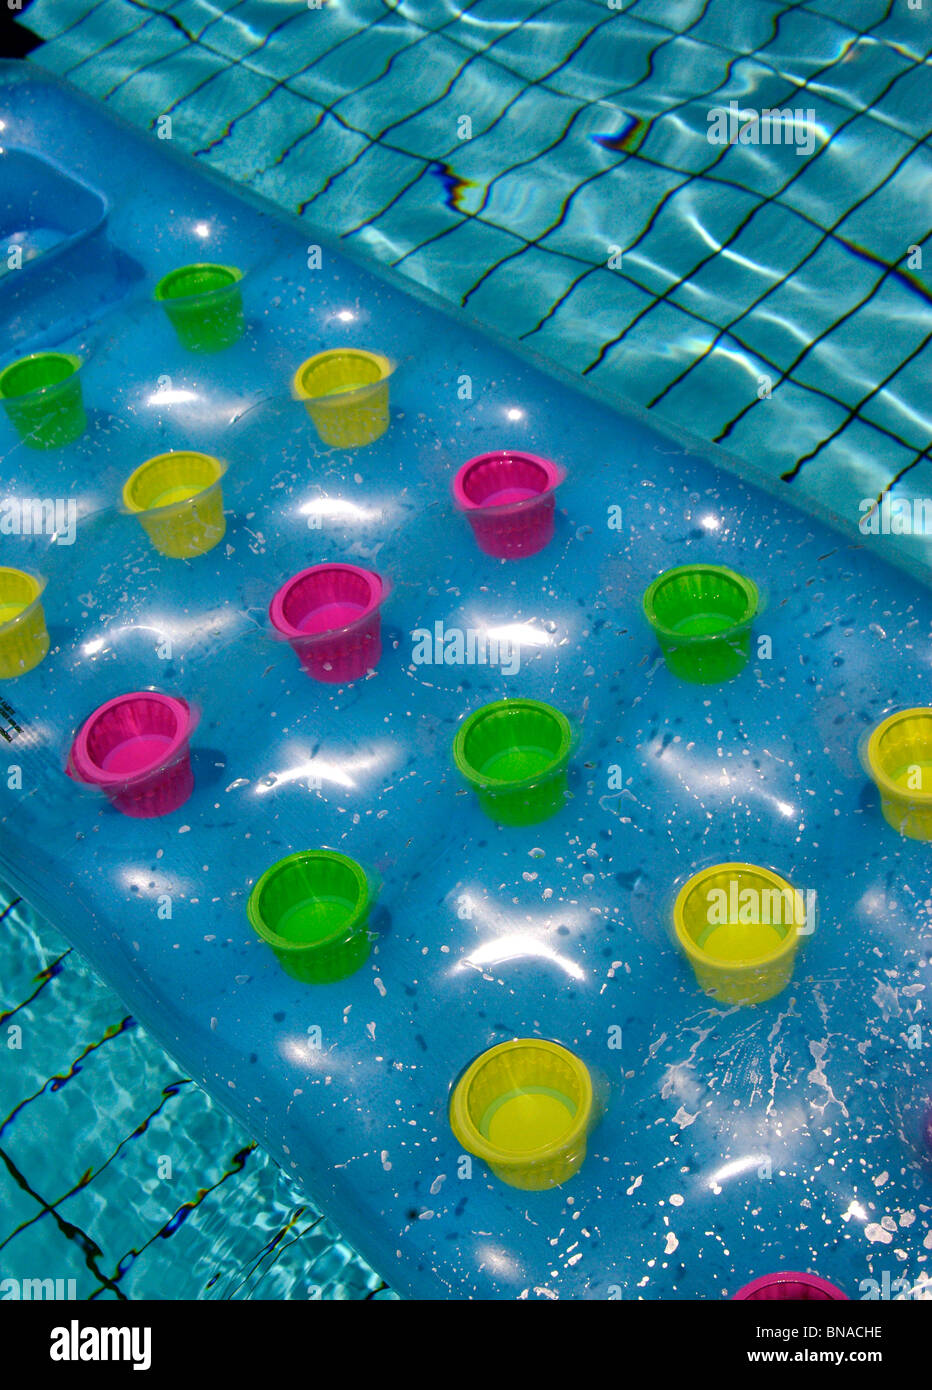 Bunte Lilo schwebend in einem Swimming pool abbildenden Sommerurlaub / Urlaub Atmosphäre in einem abstrakten generische Grafikstil. Stockfoto